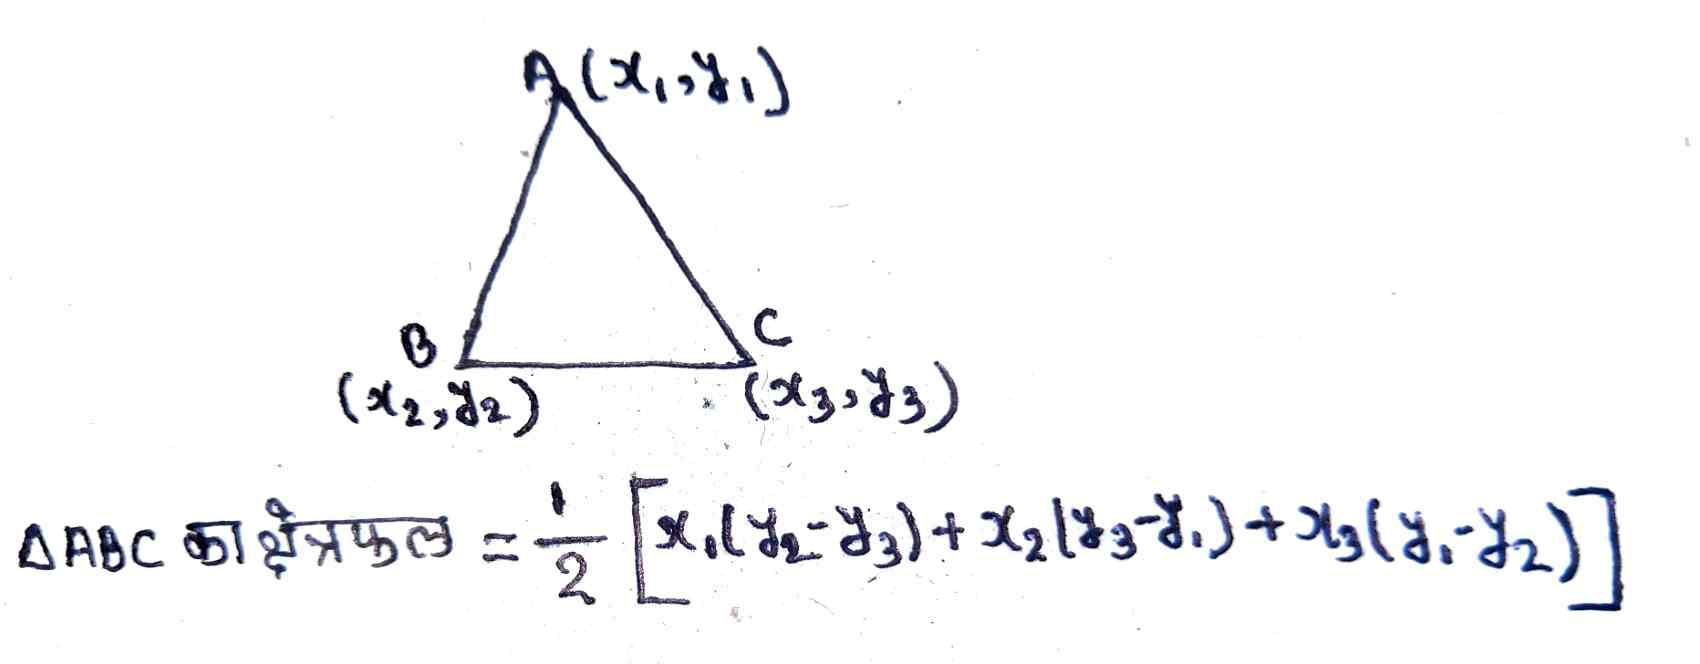 त्रिभुज का क्षेत्रफल (Area Of Triangle)